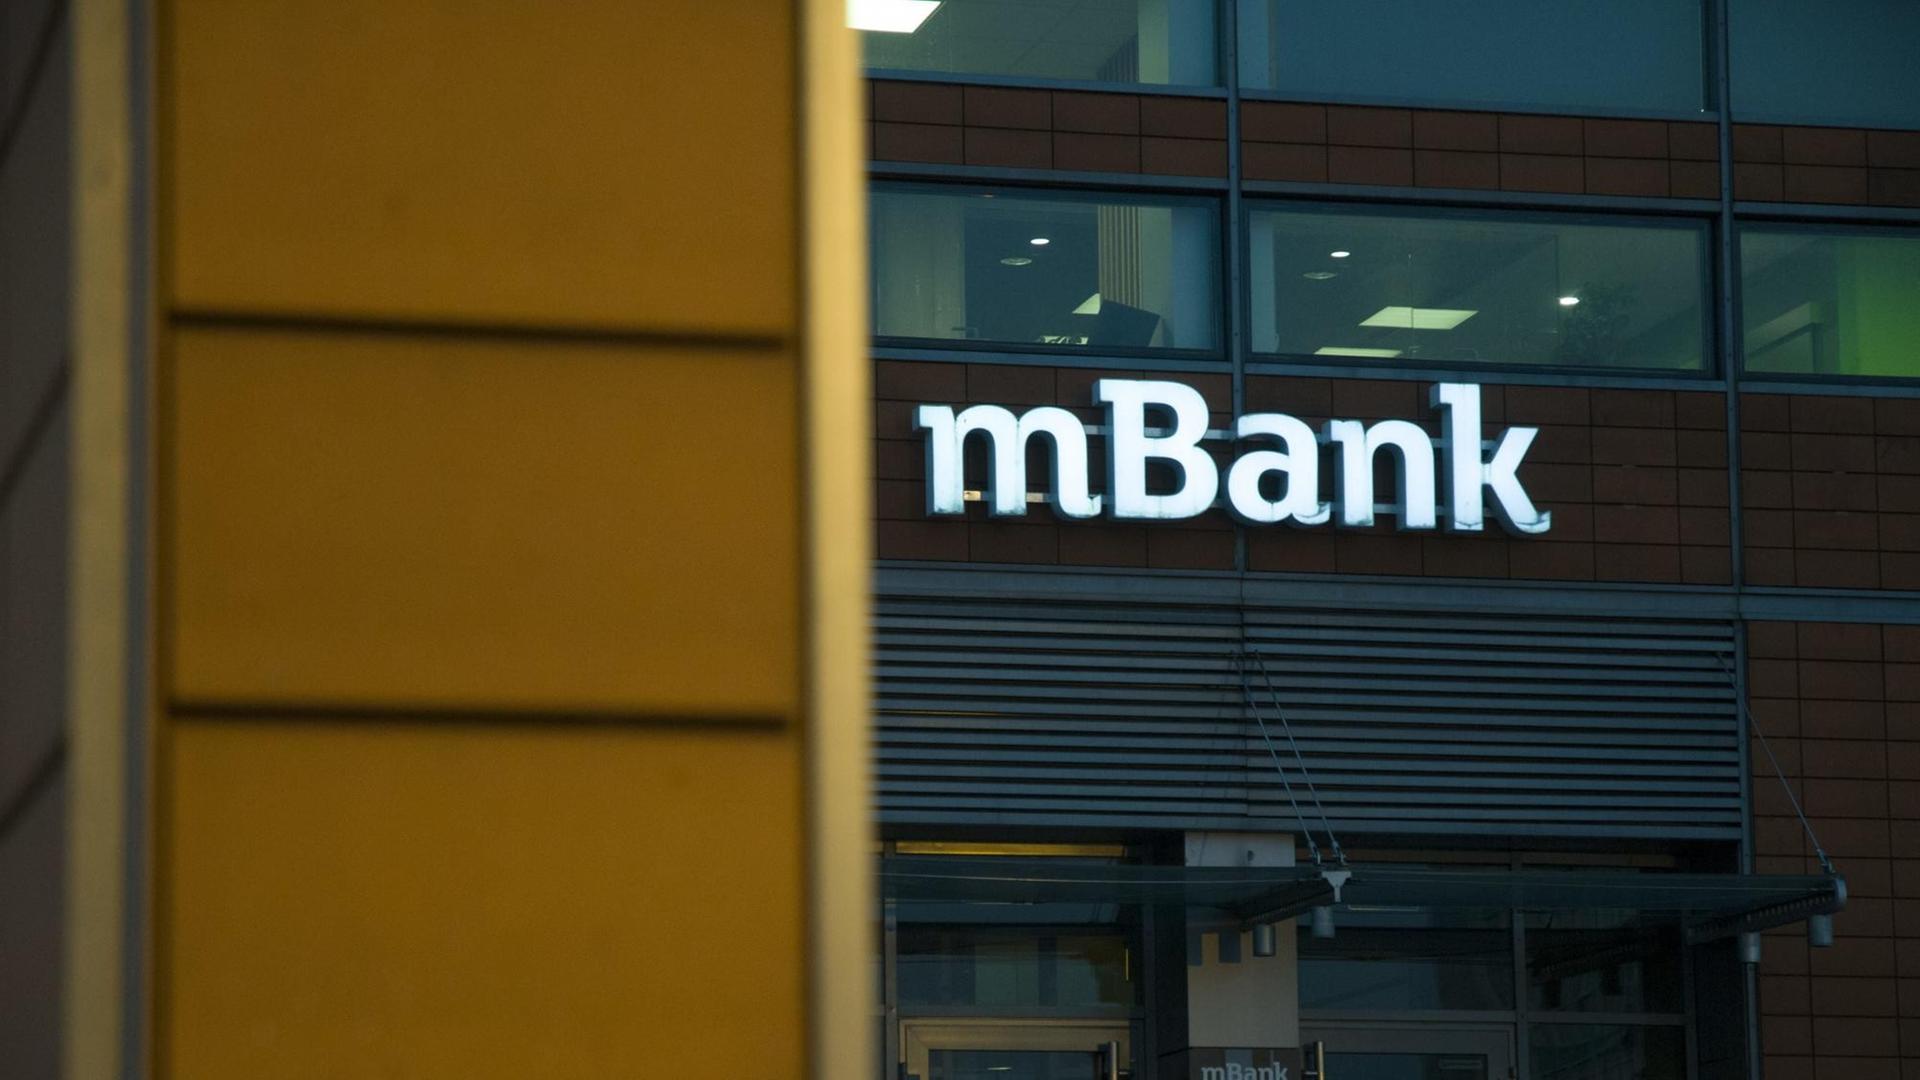 Das Logo der polnischen mBank, einer Tochter der deutschen Commerzbank, in der Altstadt von Bydgoszcz.